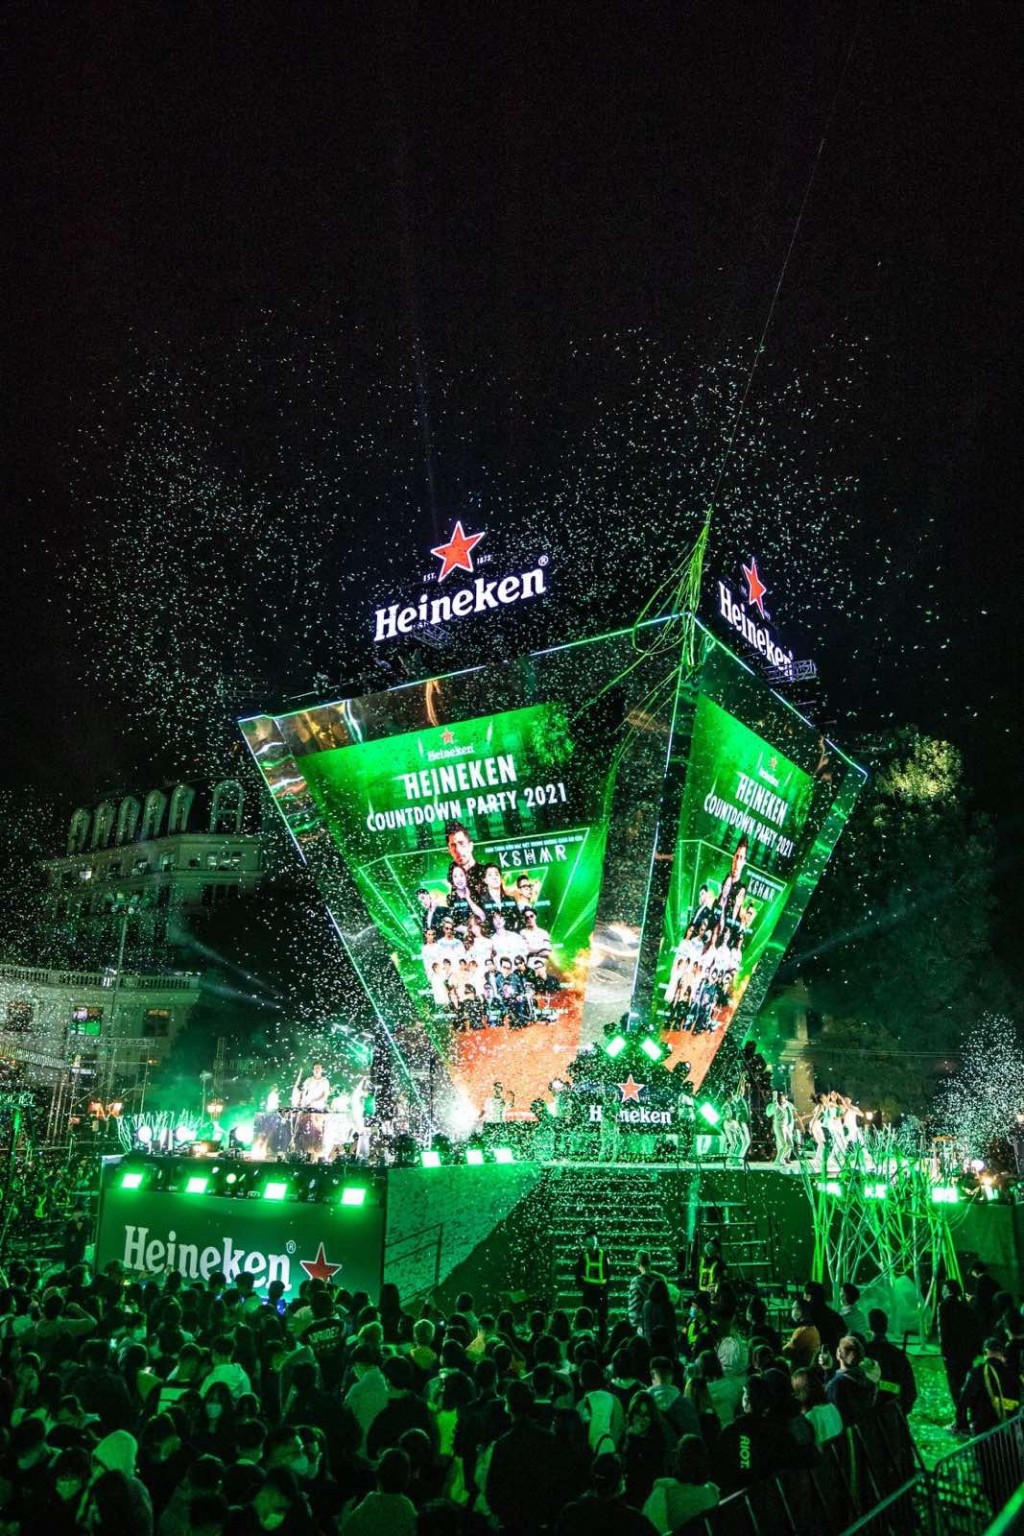 Quy mô và sức hút của các Đại nhạc hội Heineken Countdown đã được kiểm chứng qua nhiều năm